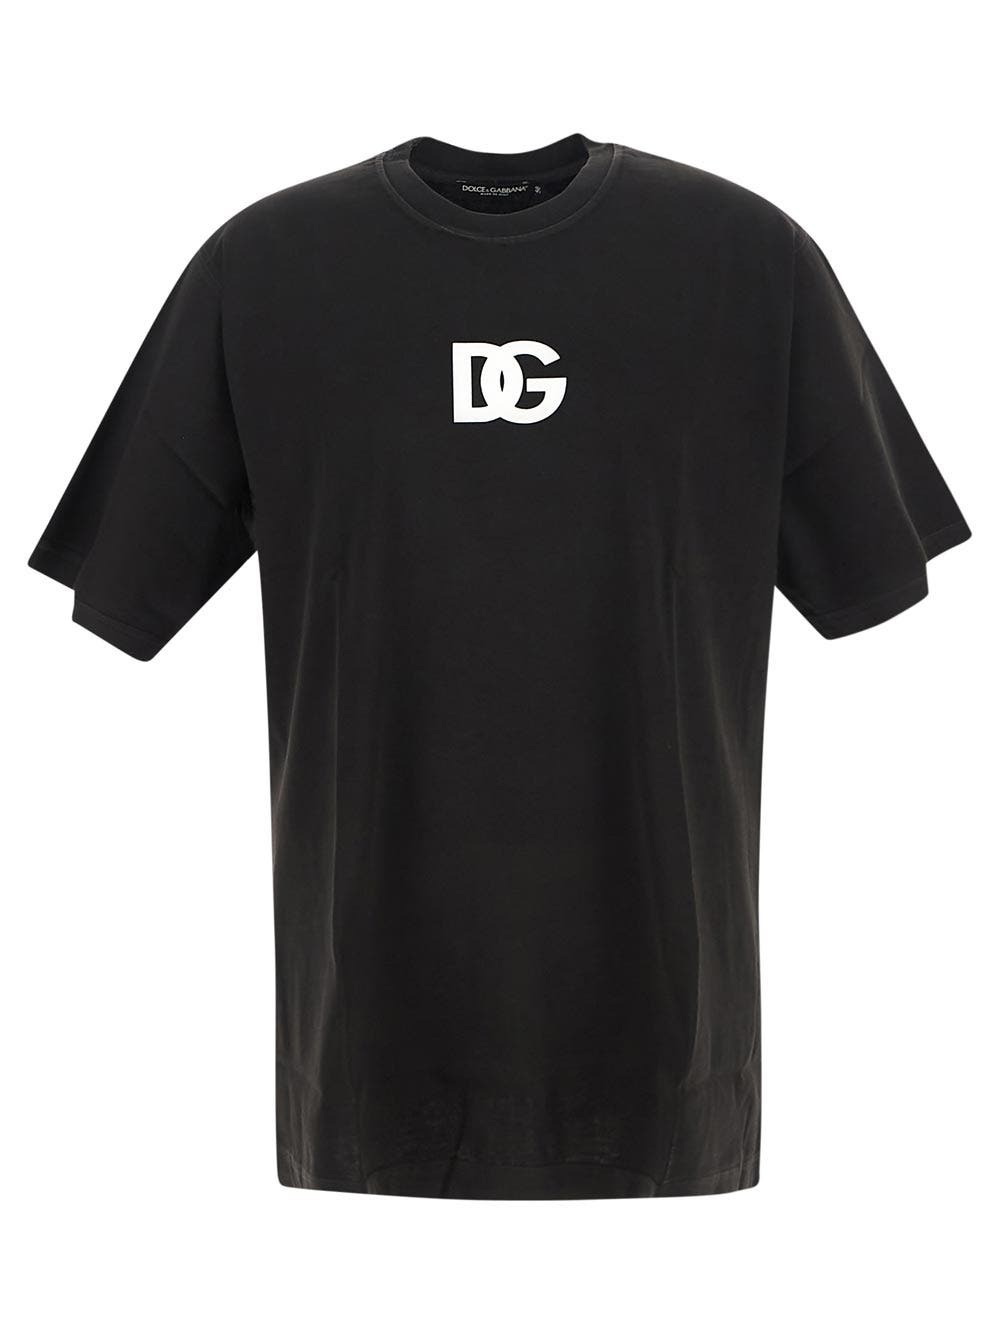 Dolce & Gabbana Men's D&G Band Print T-Shirt in Black Dolce & Gabbana